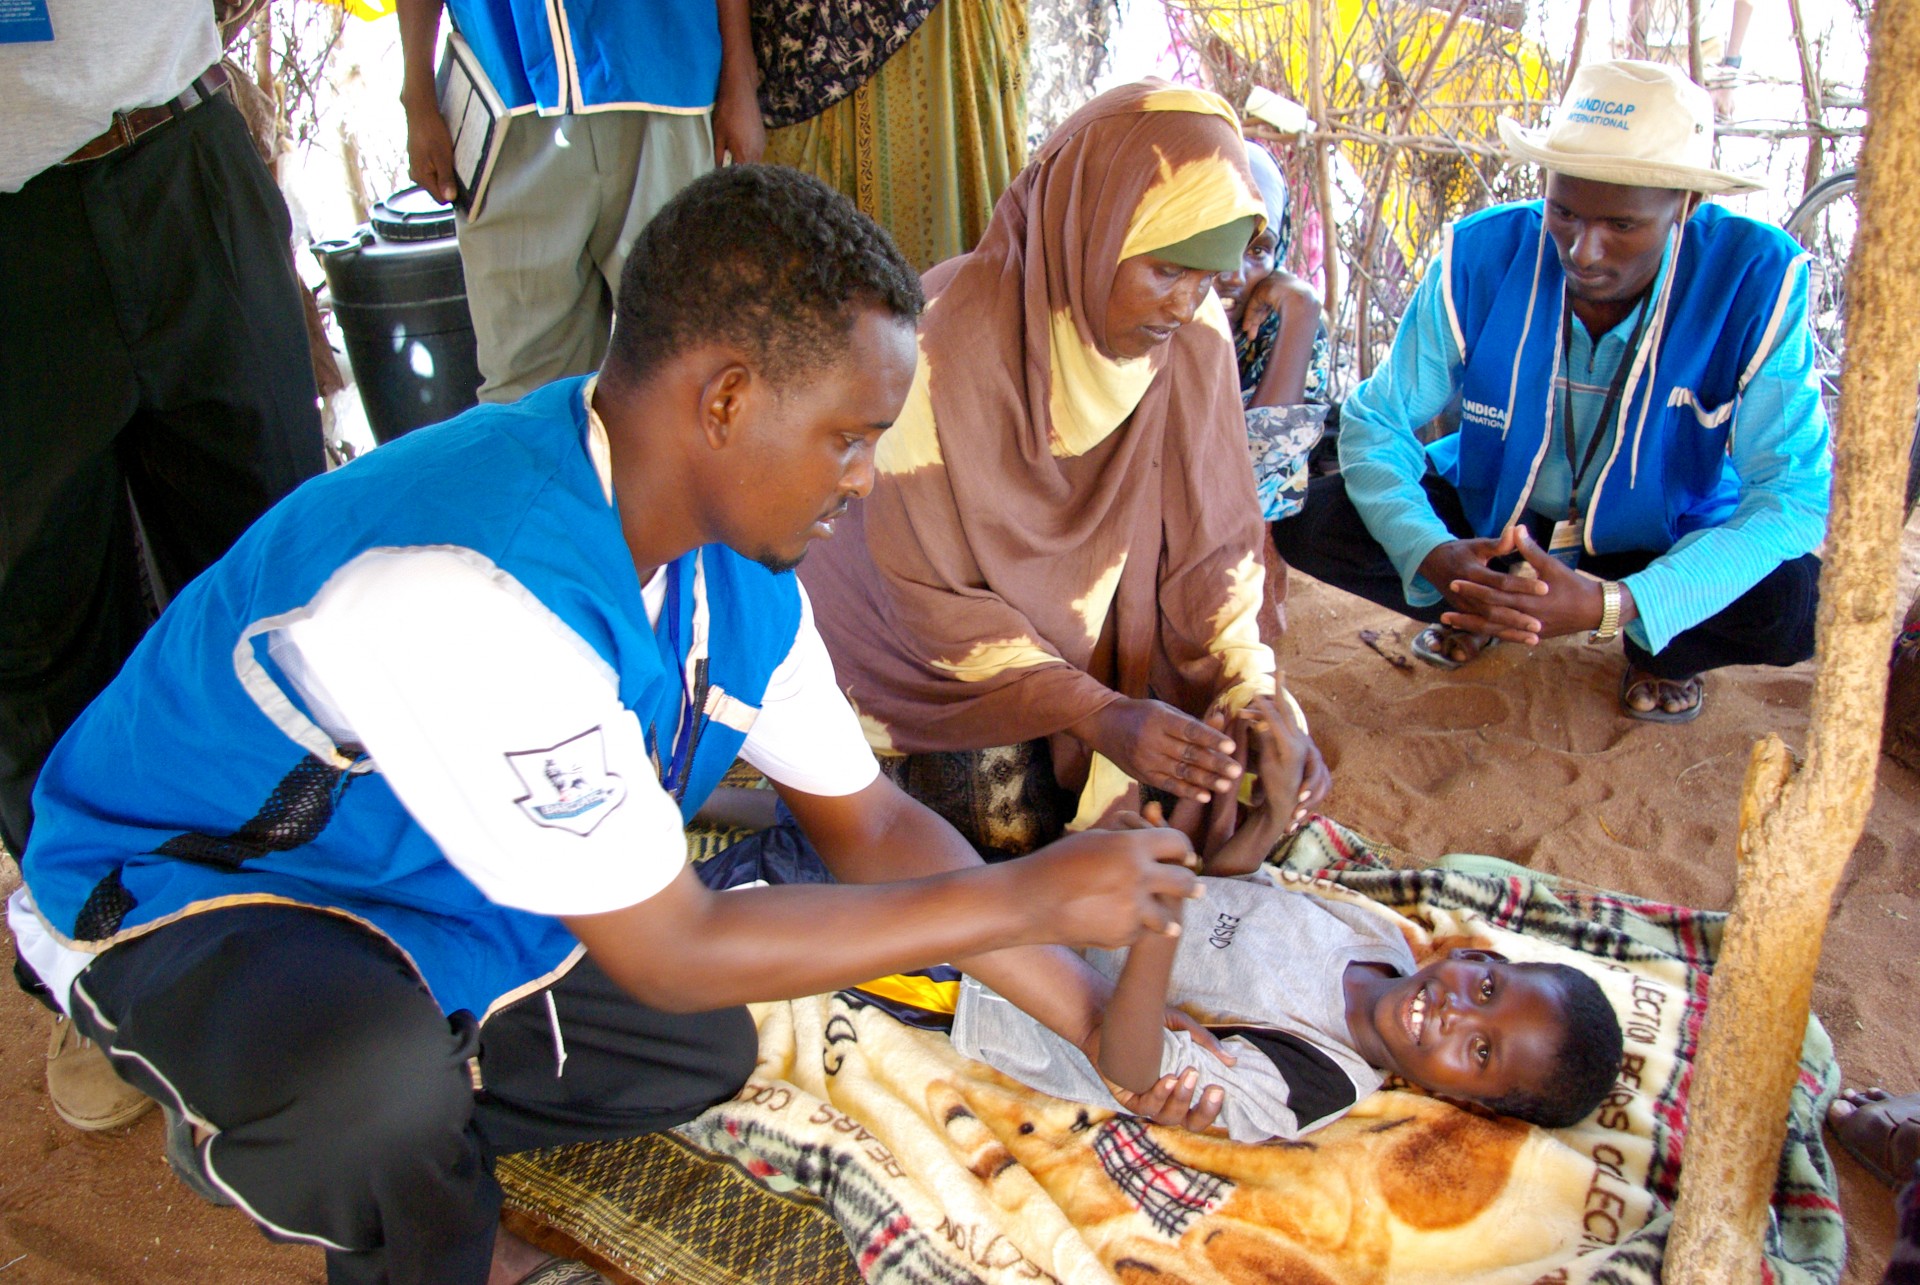 Un enfant de 8 ans est soigné dans le camp de réfugiés de Dadaab